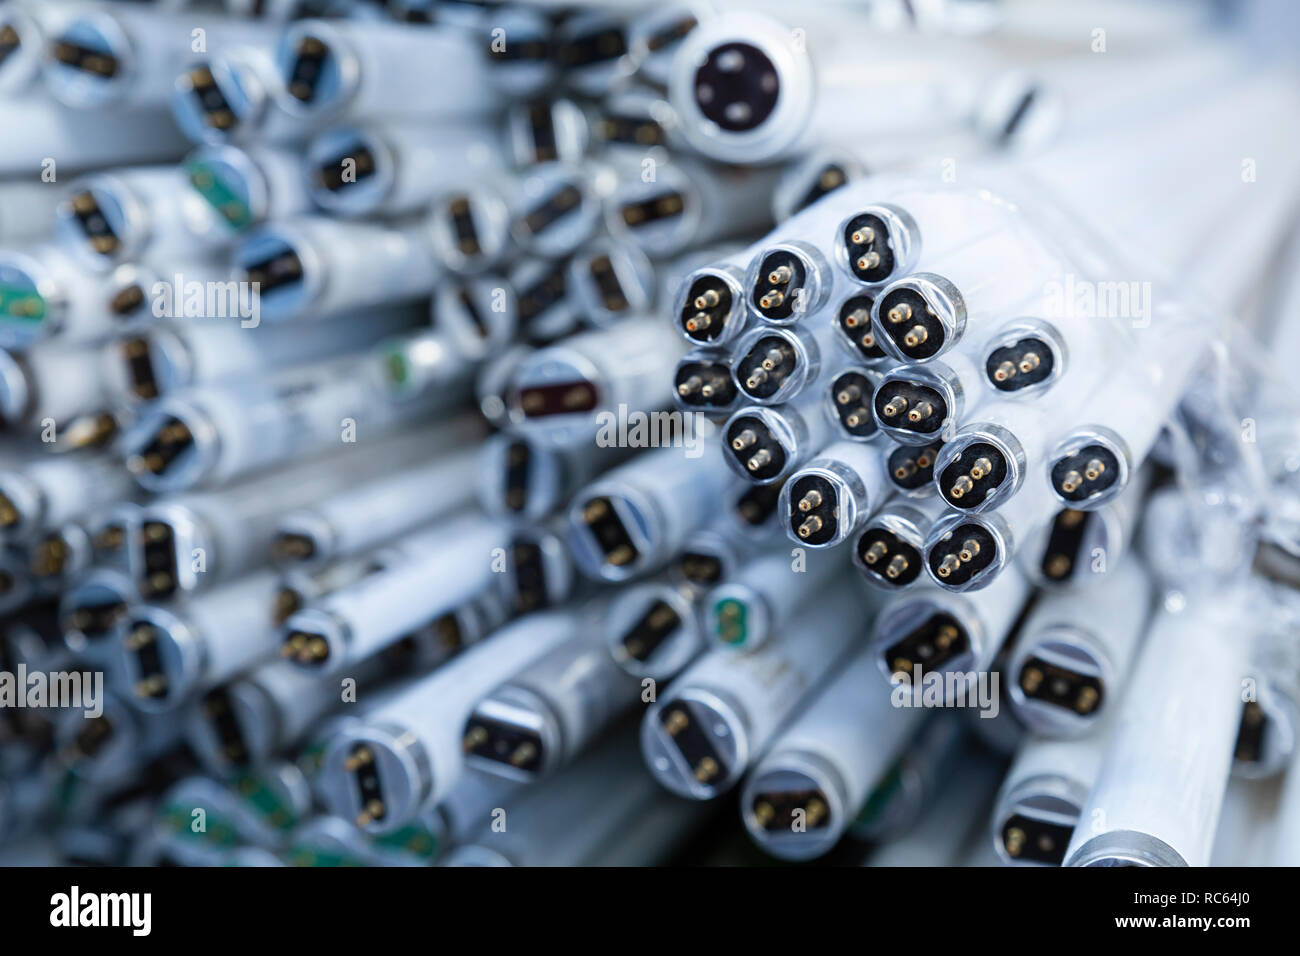 Close-up de una pila de desuso descartados y tubos de lámpara de neón esperando el reciclaje Foto de stock